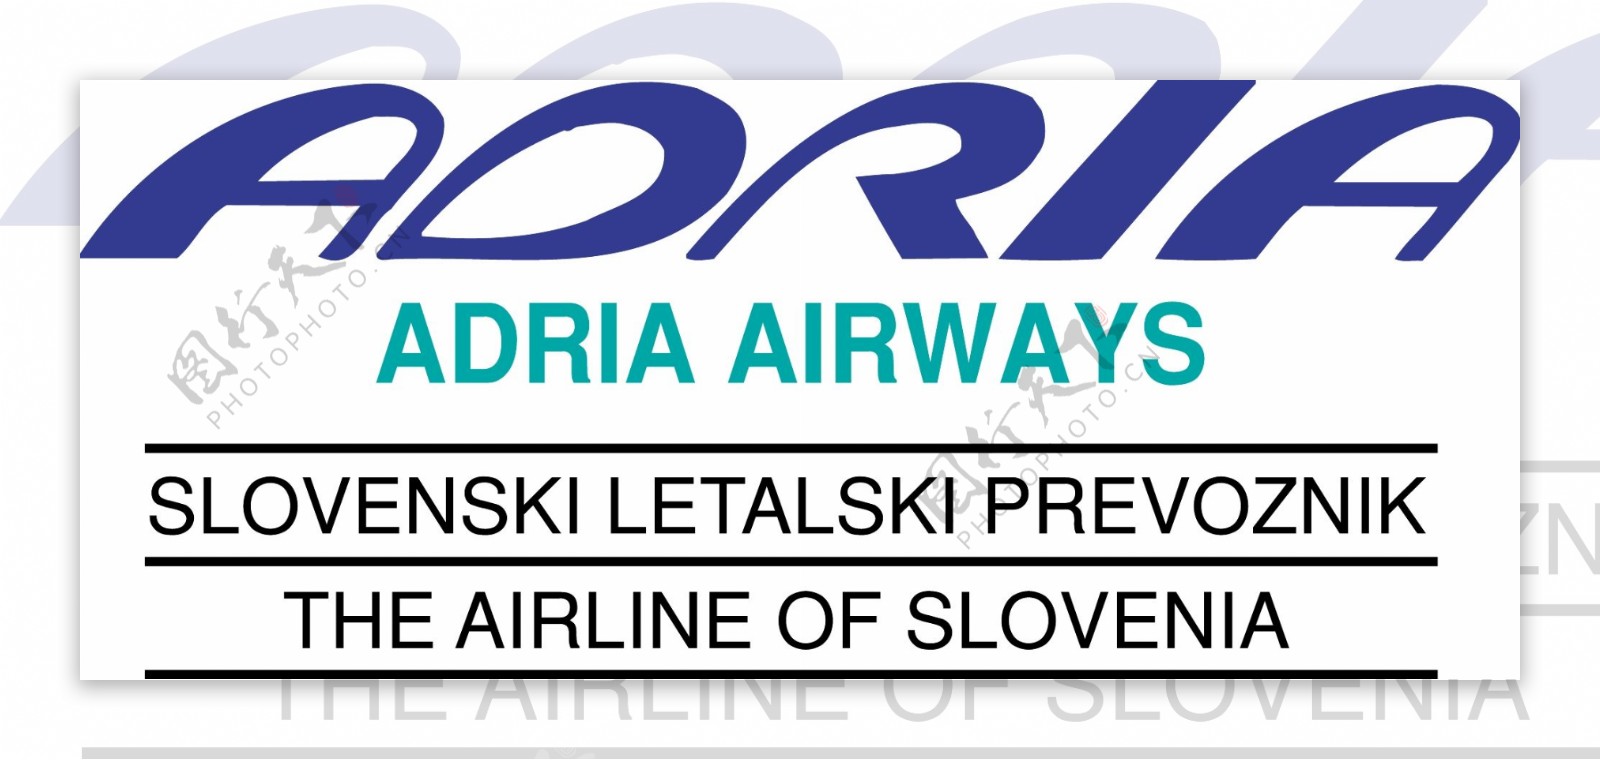 亚德里亚航空斯洛文尼亚航空公司